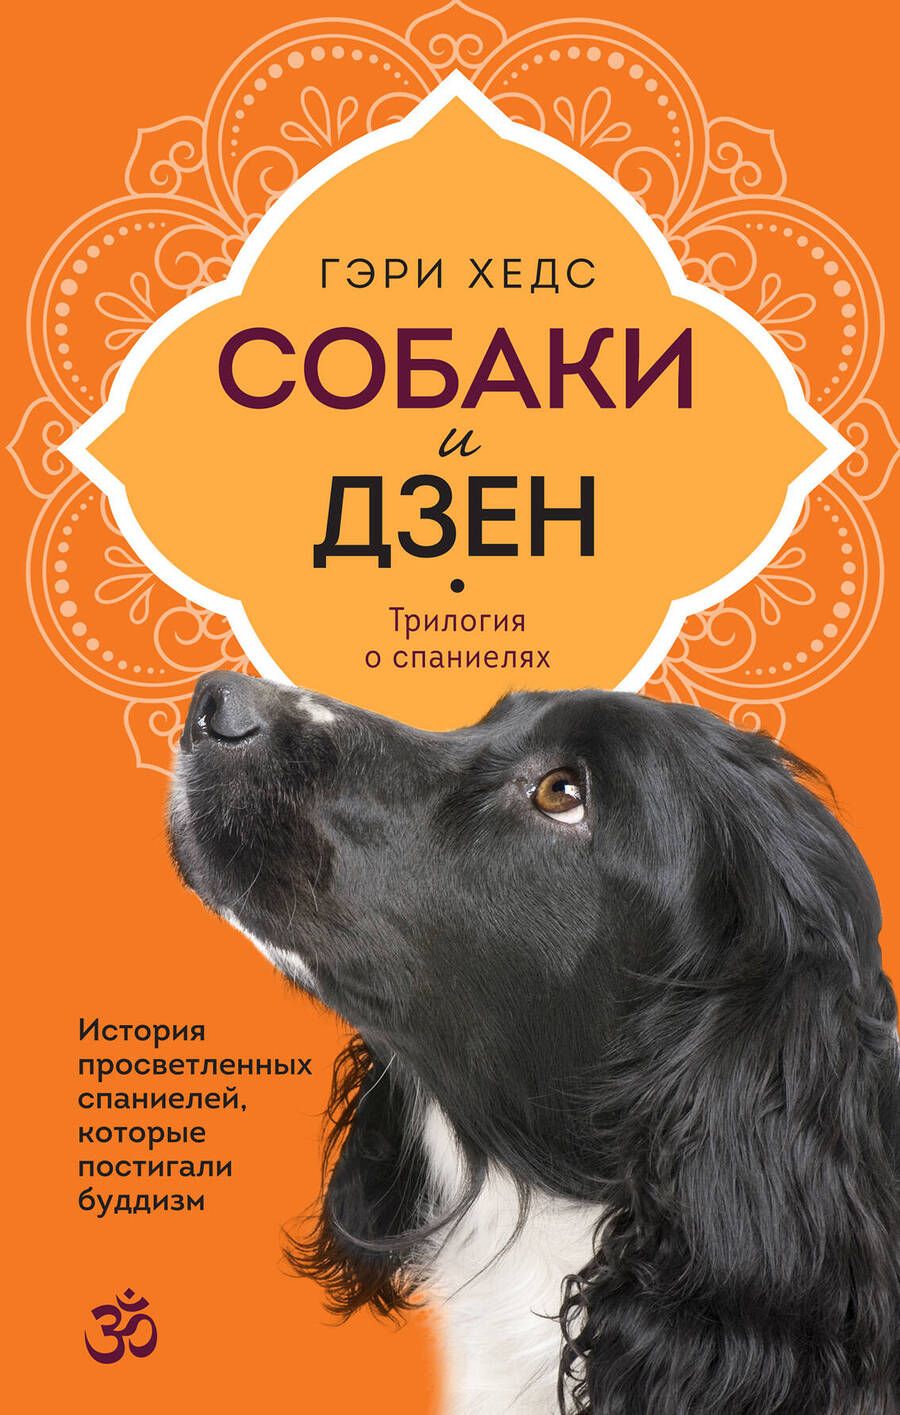 Обложка книги "Хедс: Собаки и дзен. История просветленных спаниелей, которые постигали буддизм"